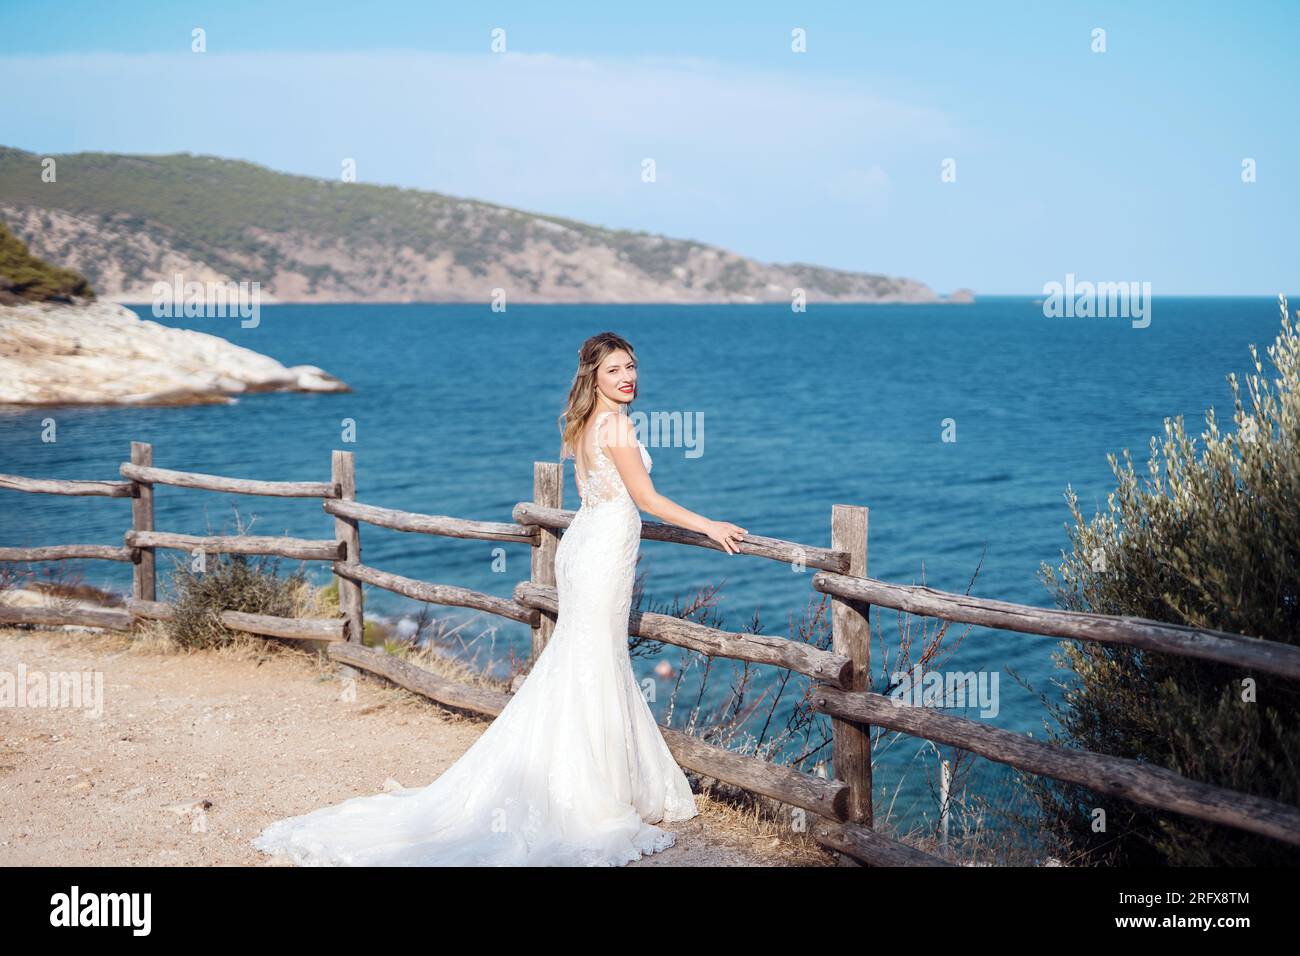 Eine wunderschöne Braut am Strand von Griechenland Foto Stock